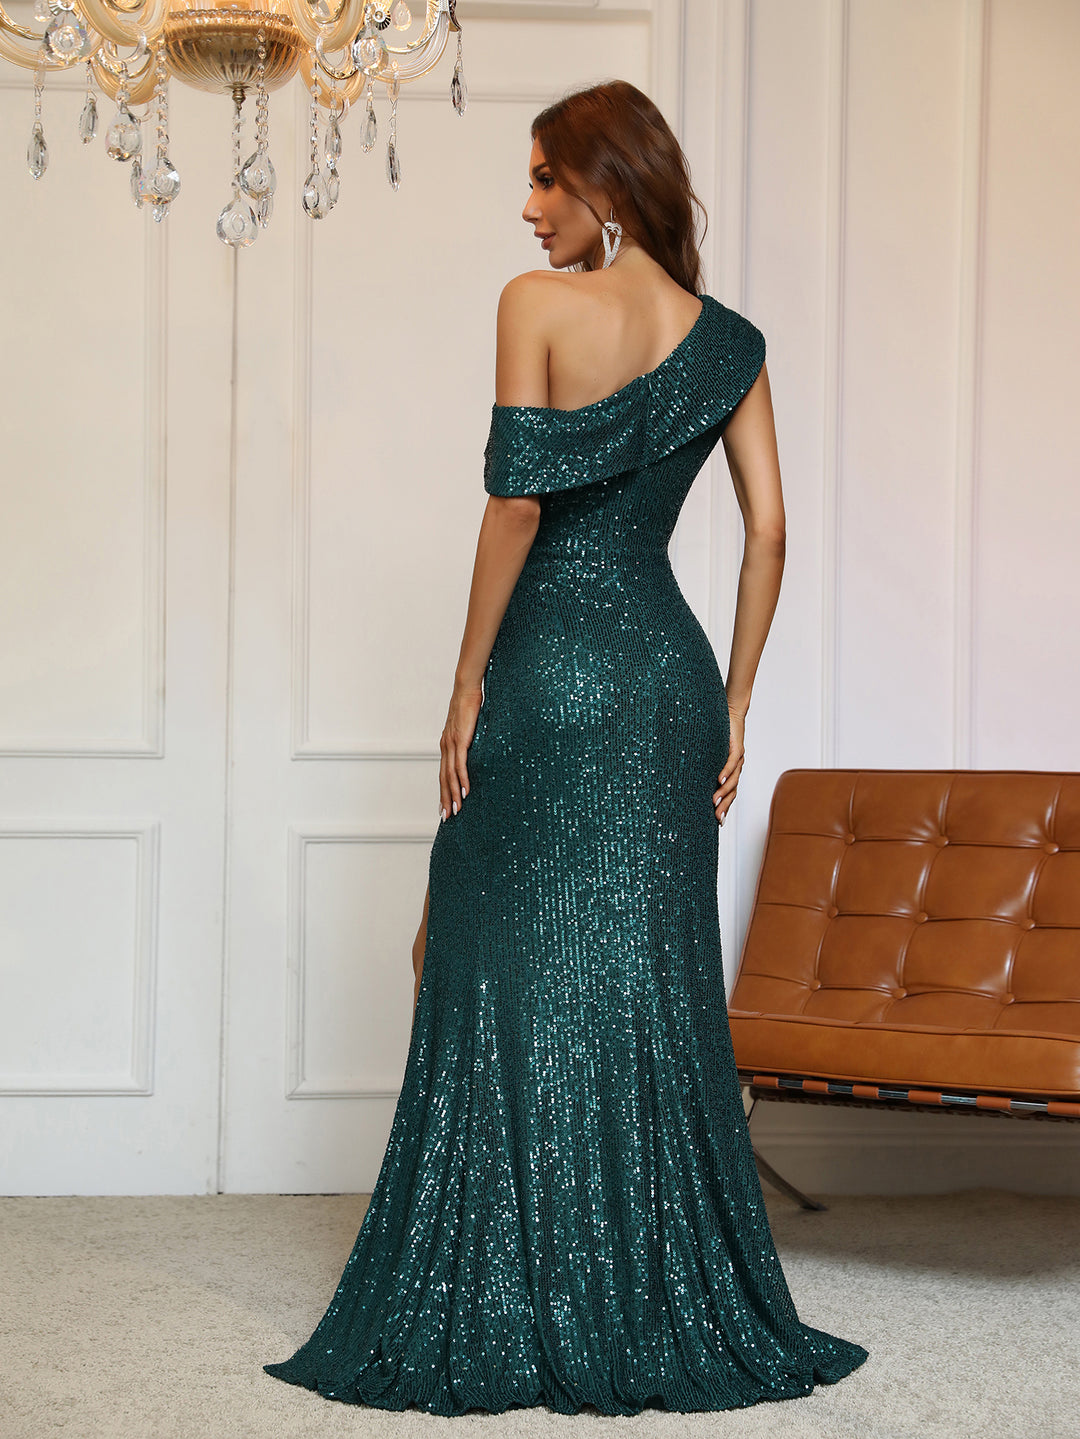 Elegant One Shoulder Sleeveless Sequins Dress